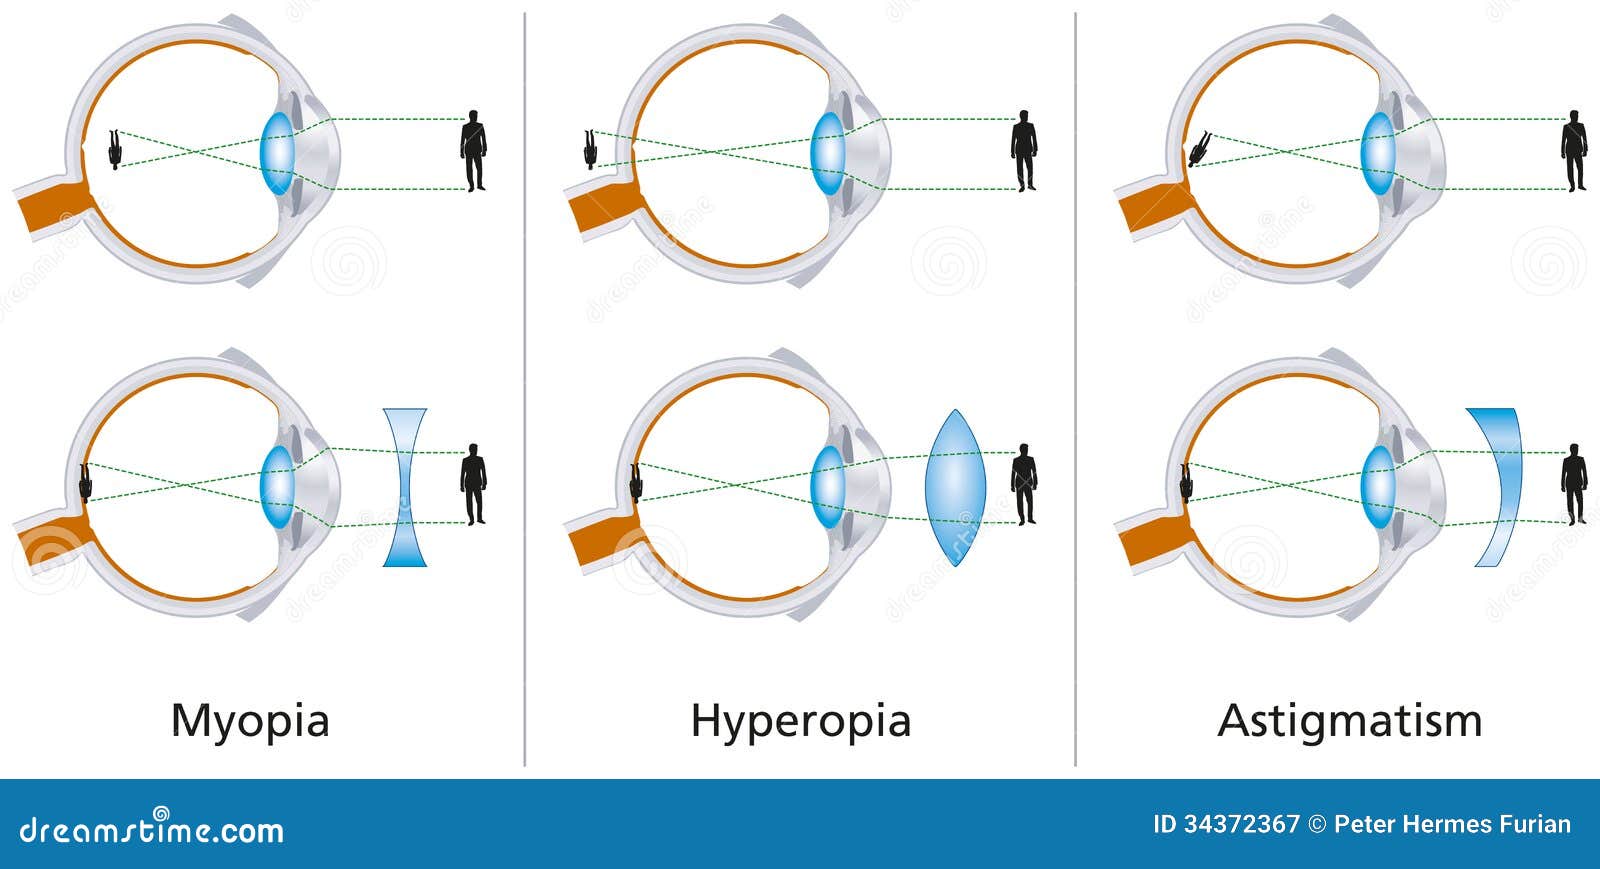 Mi a hyperopia és a myopia